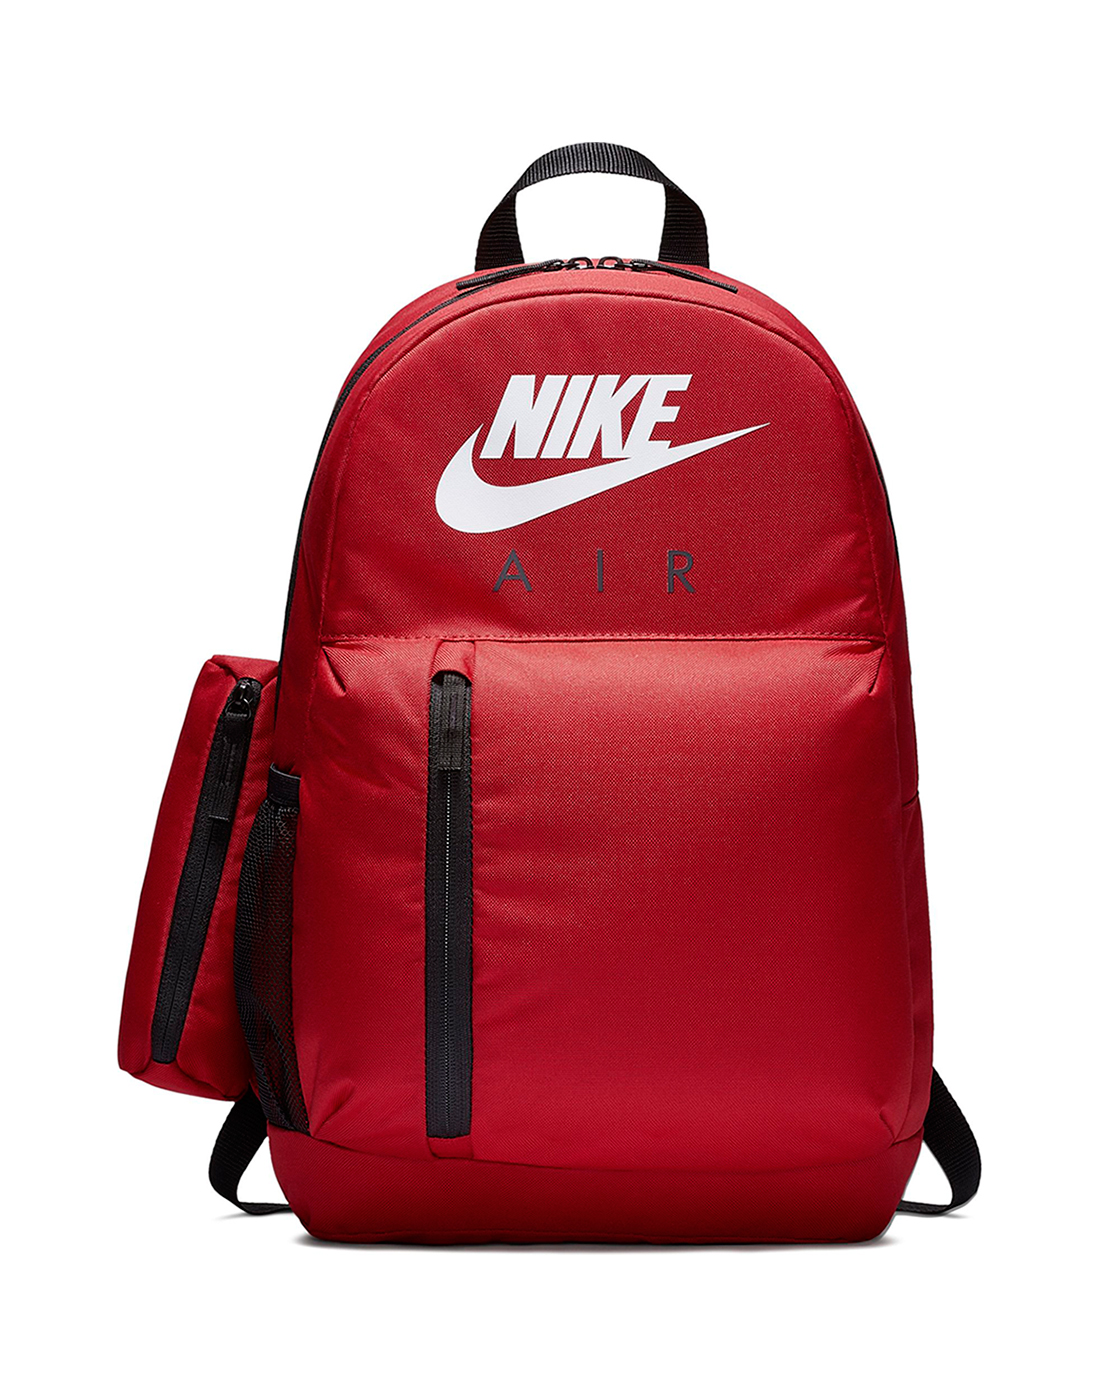 red nike air backpack